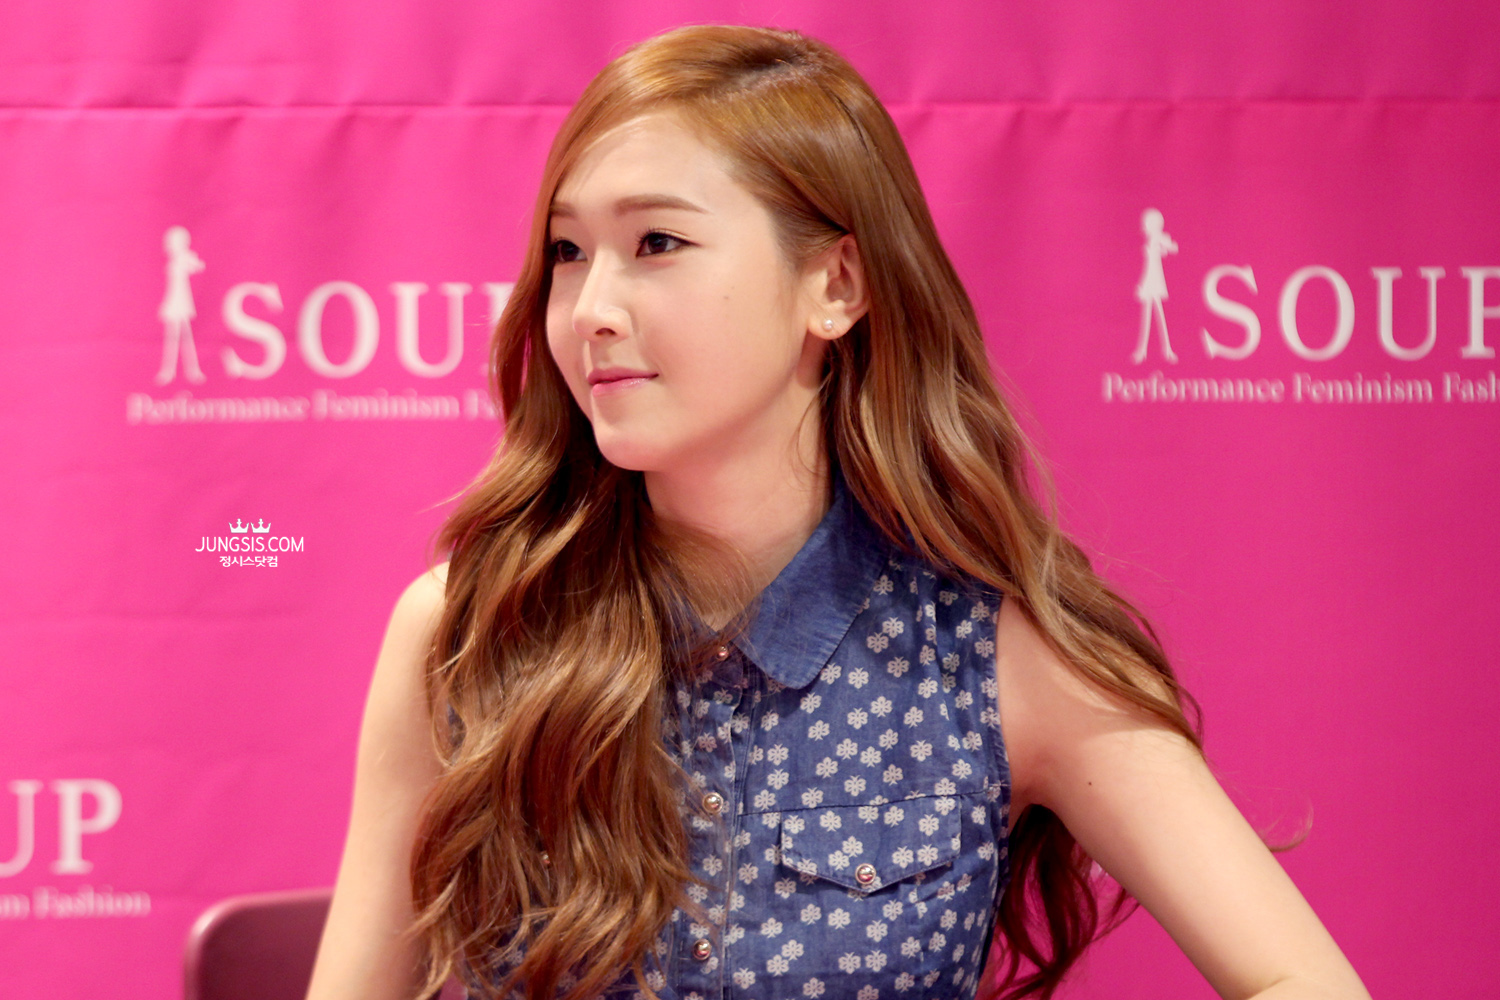 [PIC][04-04-2014]Jessica tham dự buổi fansign cho thương hiệu "SOUP" vào trưa nay - Page 3 2616CE4353A4483A049501